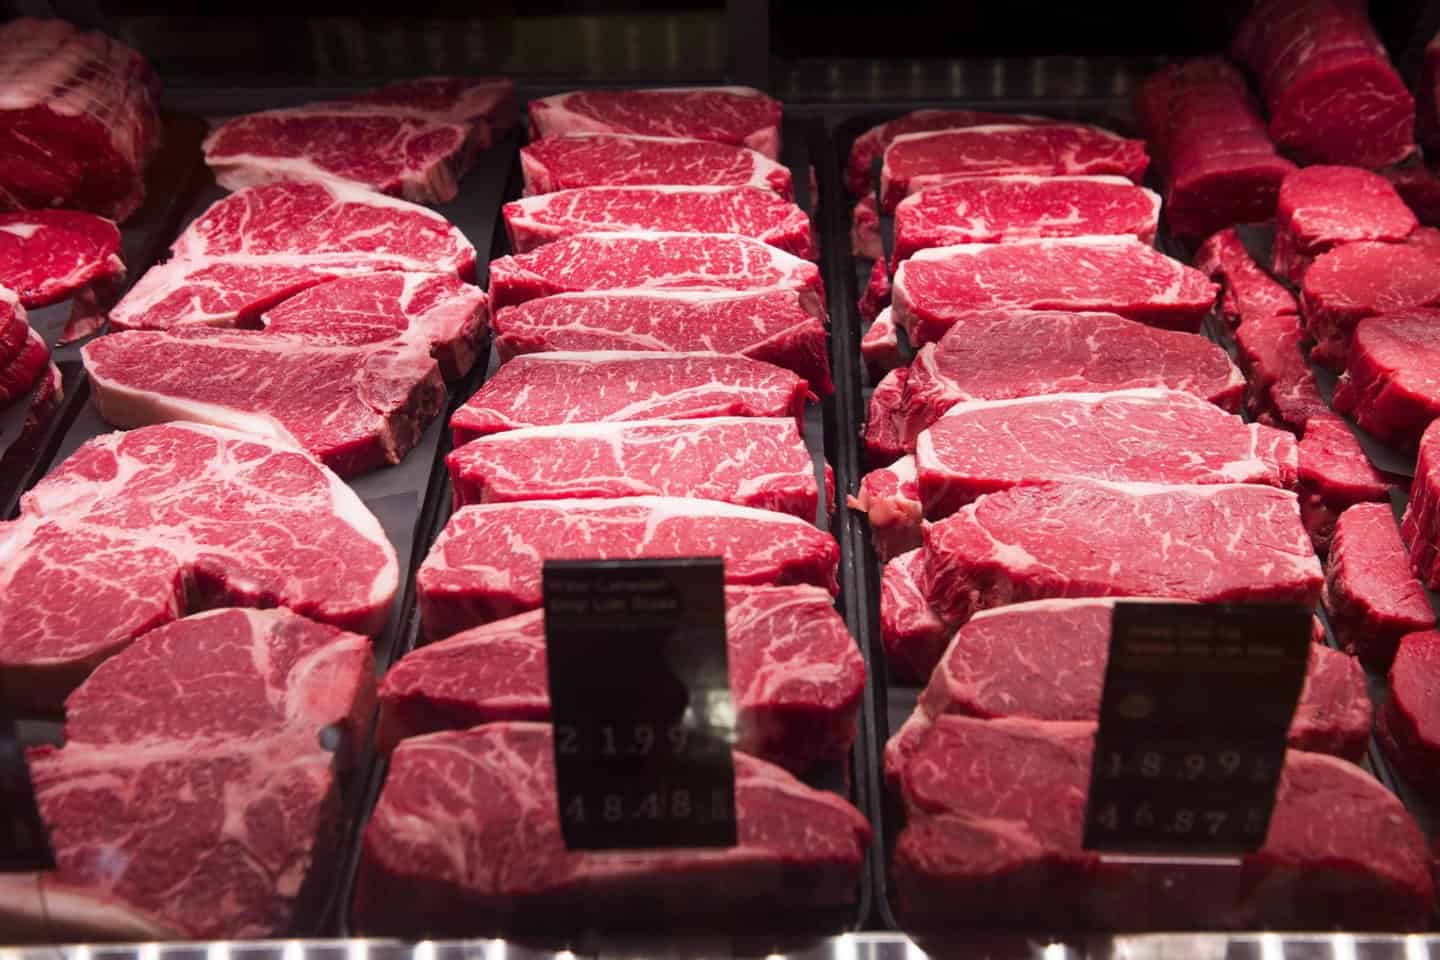 В 2022 году в стране произведено 441 тысяча тонн мяса — на 3% больше чем в предыдущем